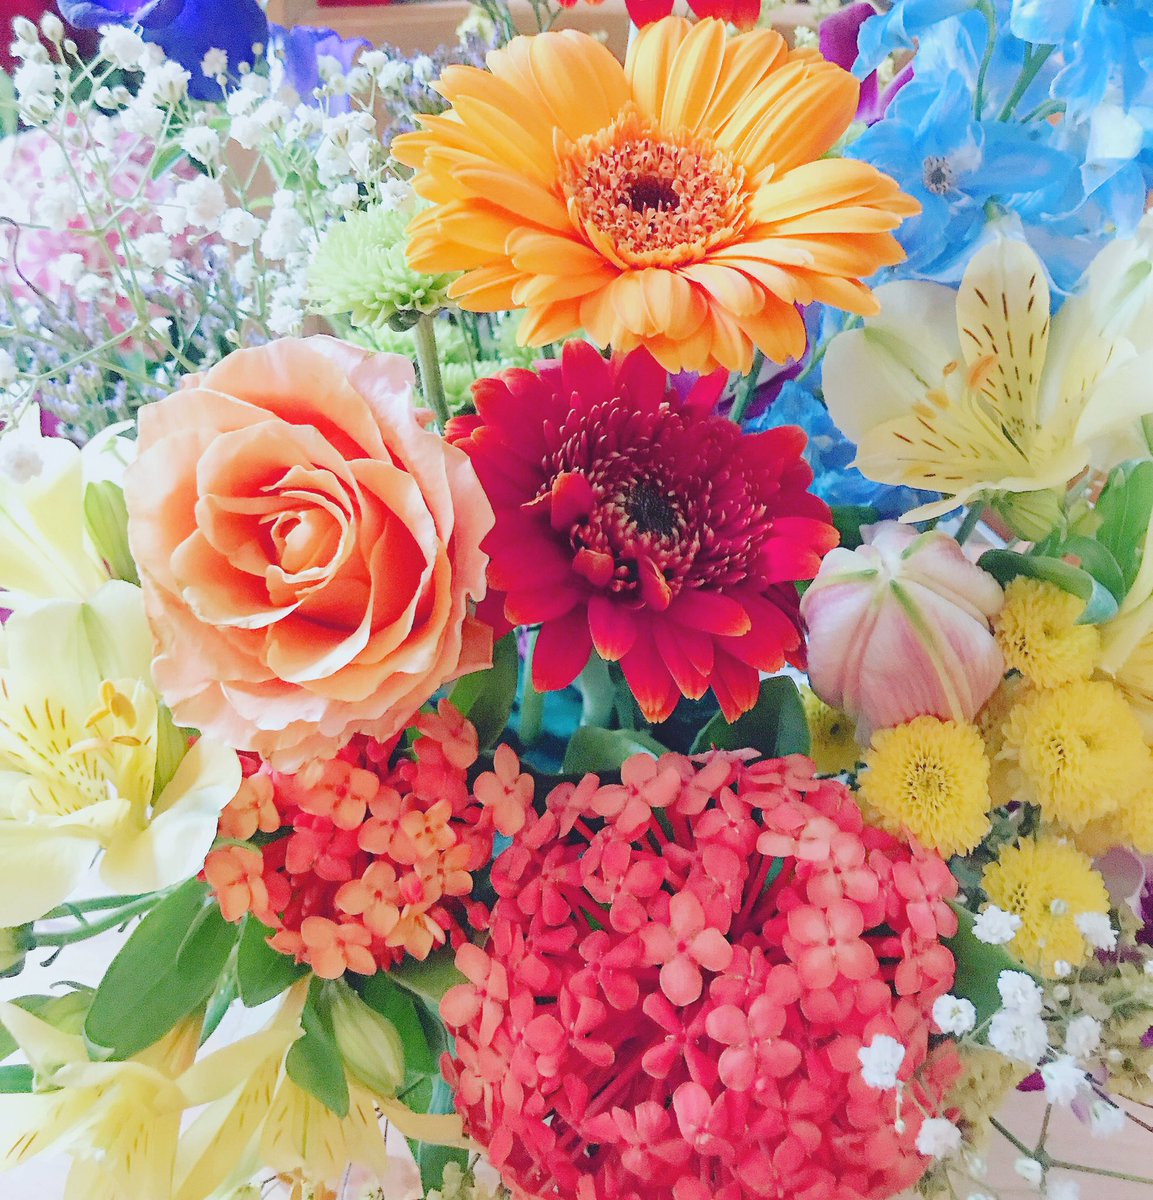 17unjour1999 明るい日差しに明るい花たち 元気カラー こんな明るい世の中に早くなってほしいな 今日は午後からアトリエにお花を取りに来られる方達へ 花の準備中 花のある暮らし 元気が出る コロナに負けるな 明るい花 Unjour1999